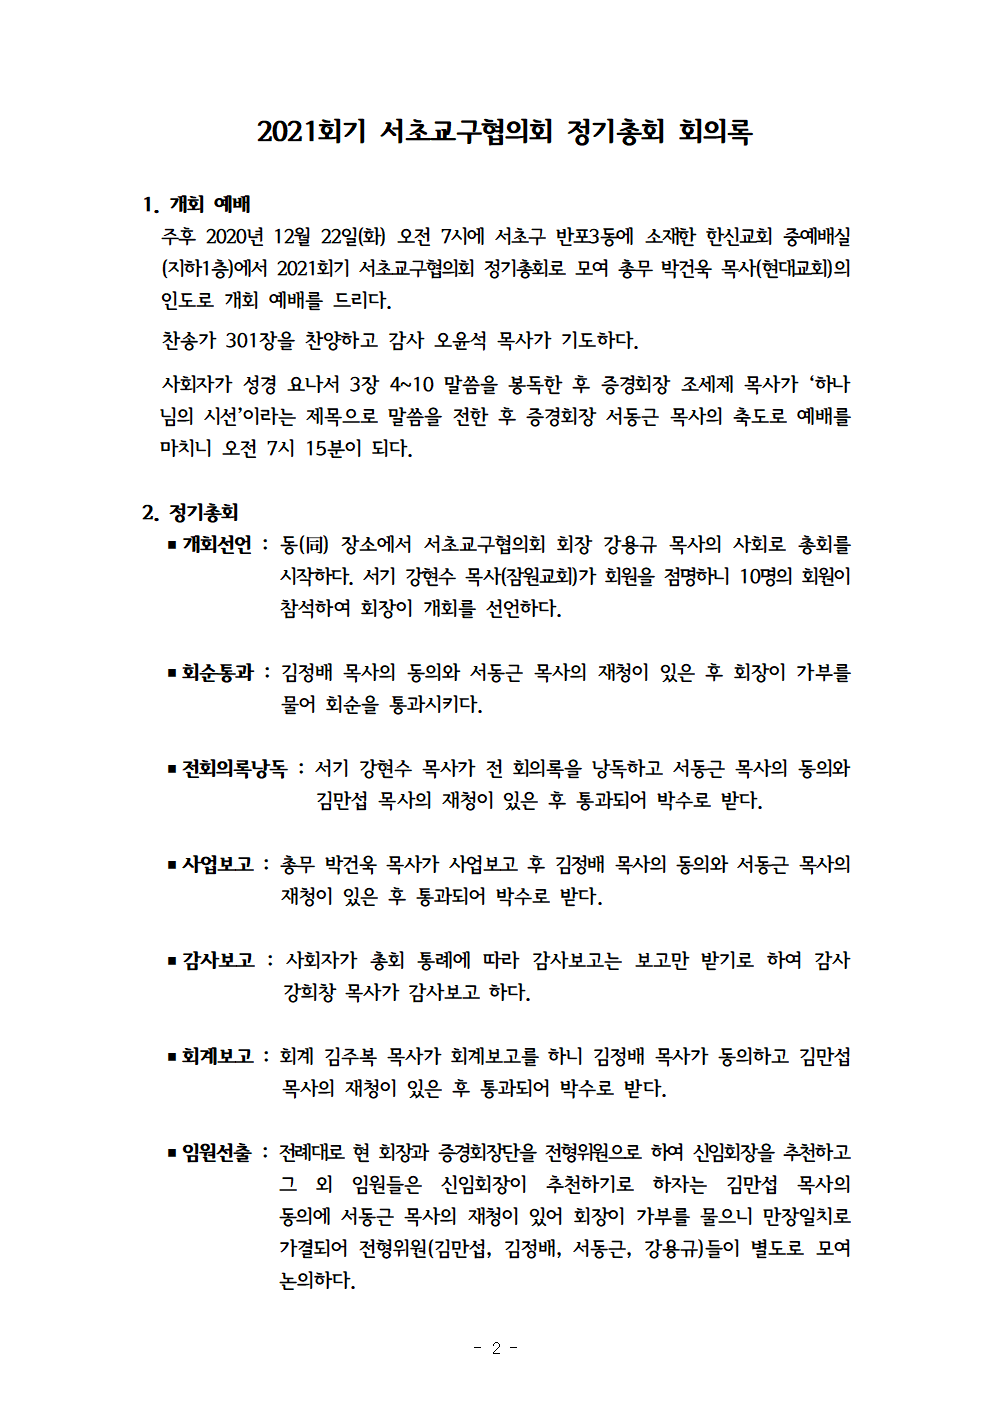 2021회기 서초교구협의회 정기총회자료(12.17)_홈피용003.png